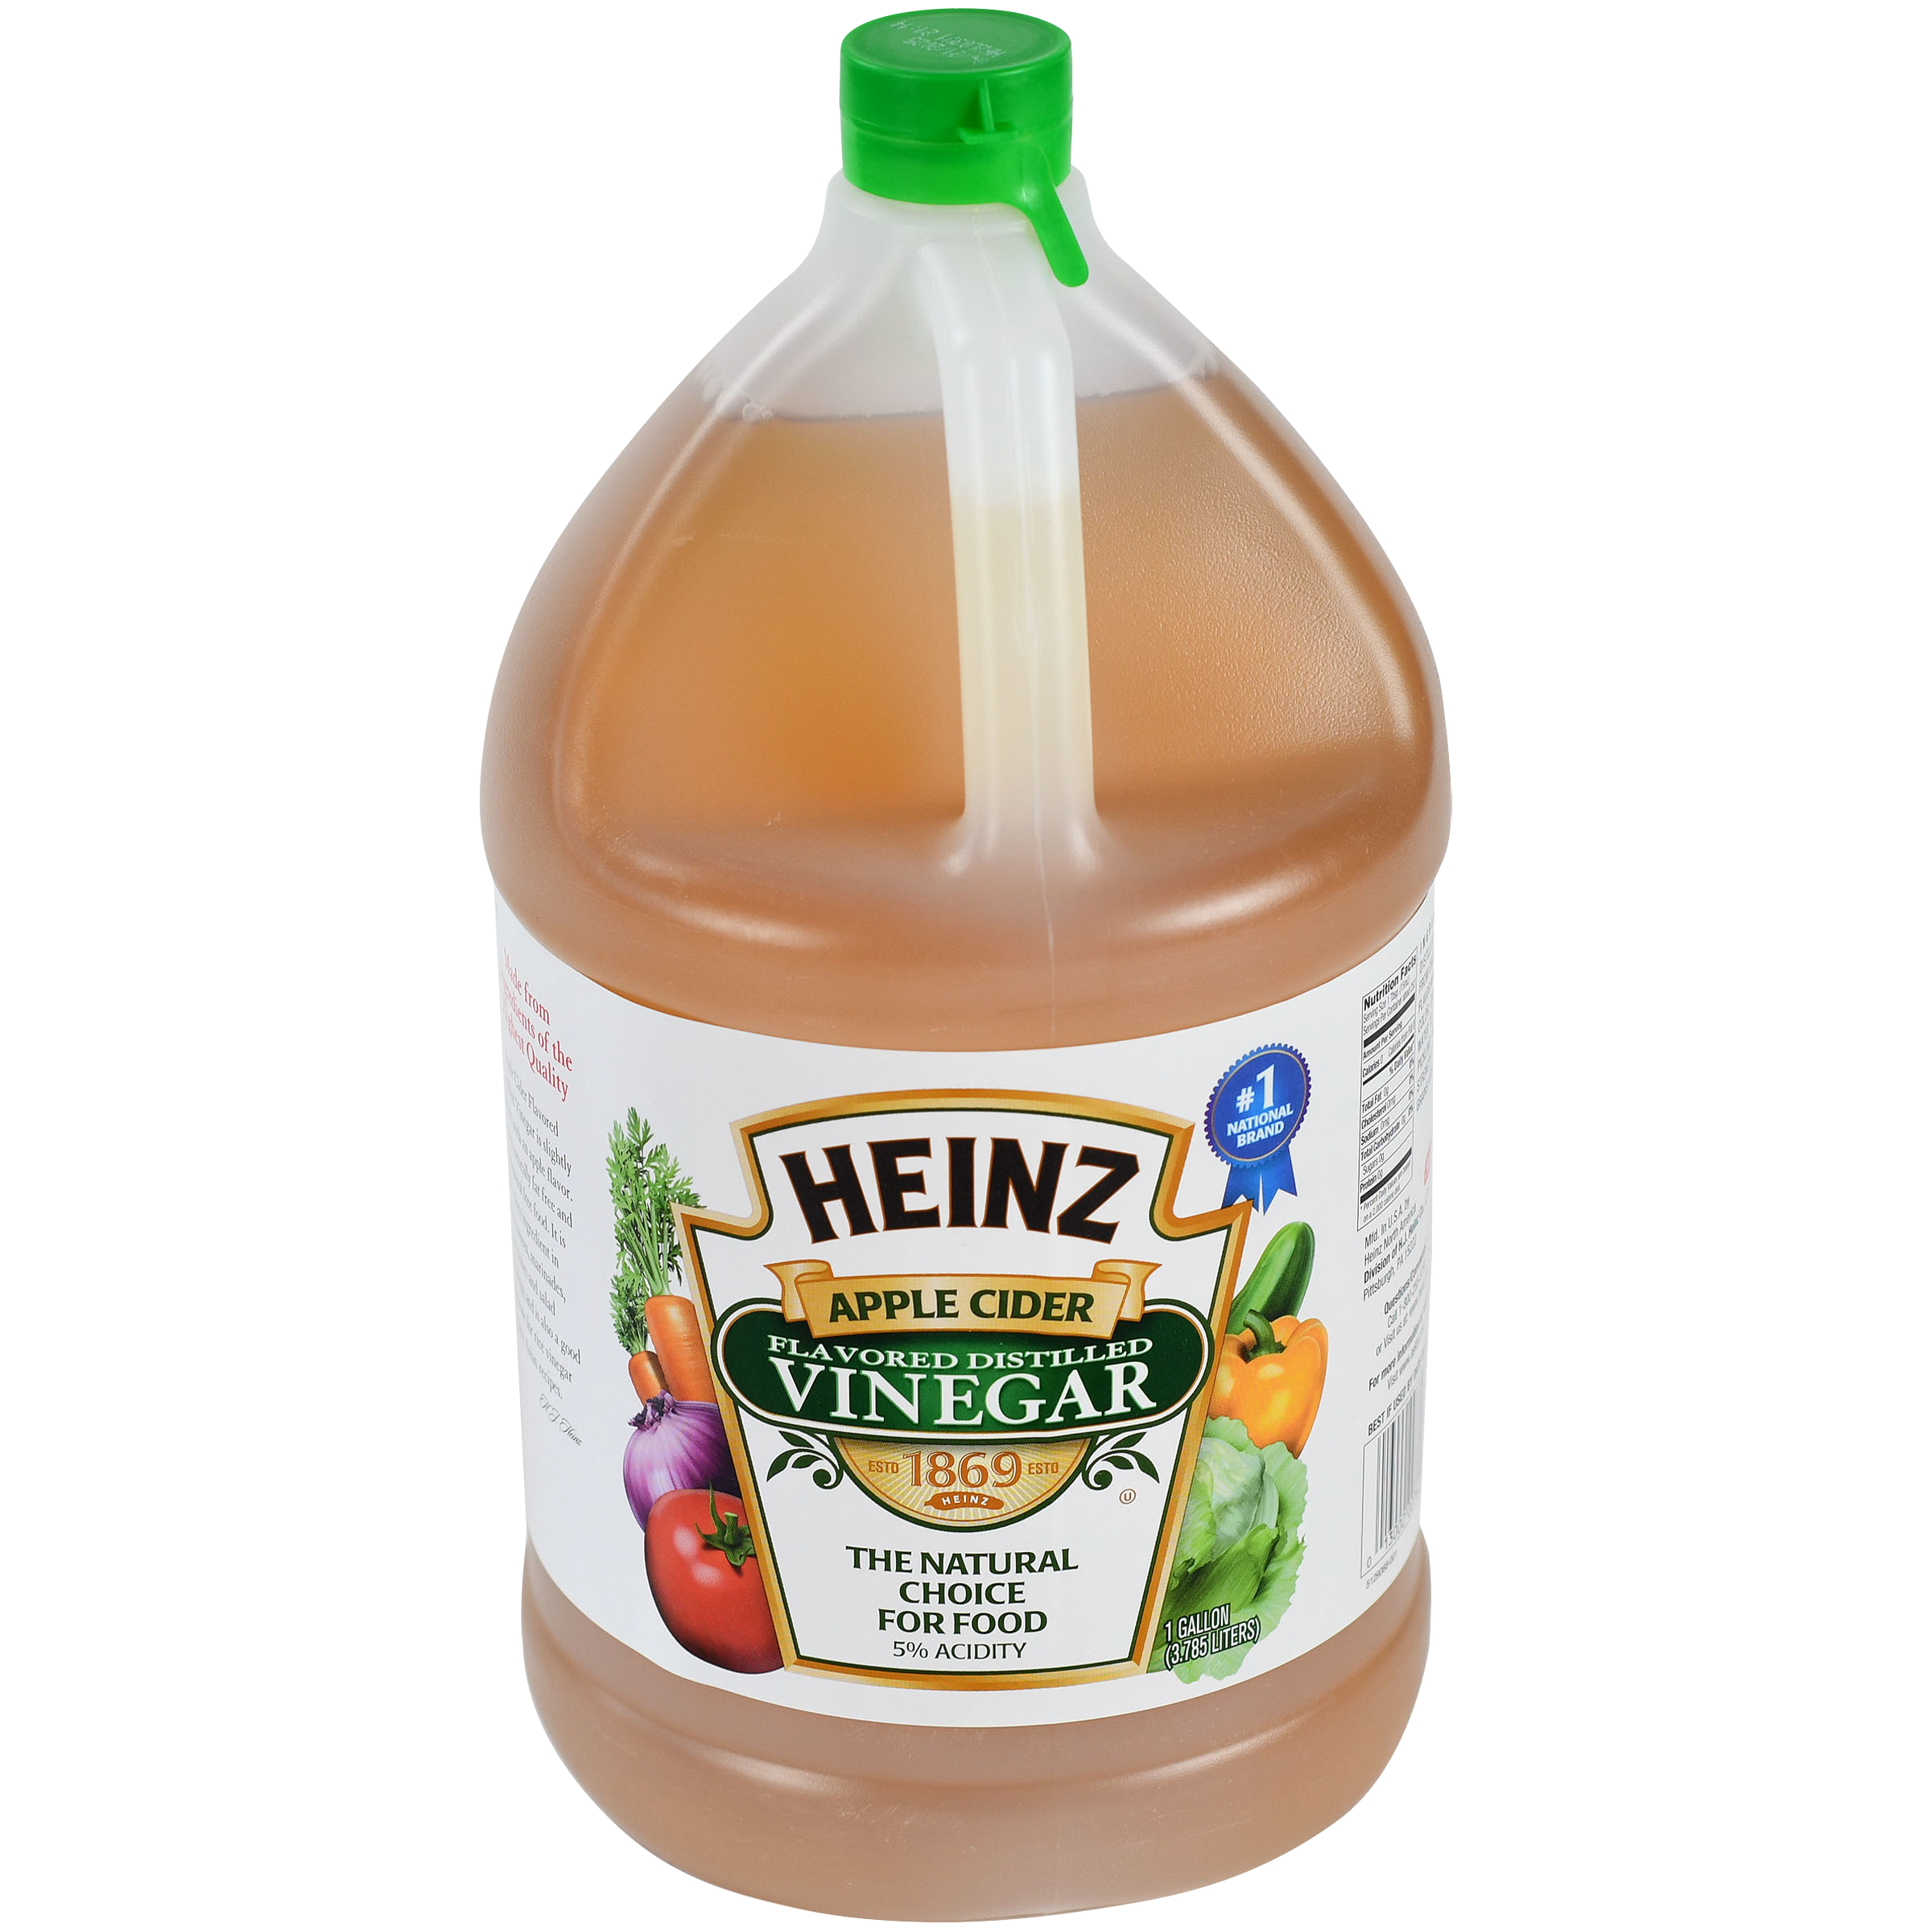 http://cdn.allotta.io/image/upload/v1693906229/dxp-images/afh/products/heinz-apple-cider-flavored-distilled-vinegar-1-gallon-6-per-case-10013000007624-en-US.png